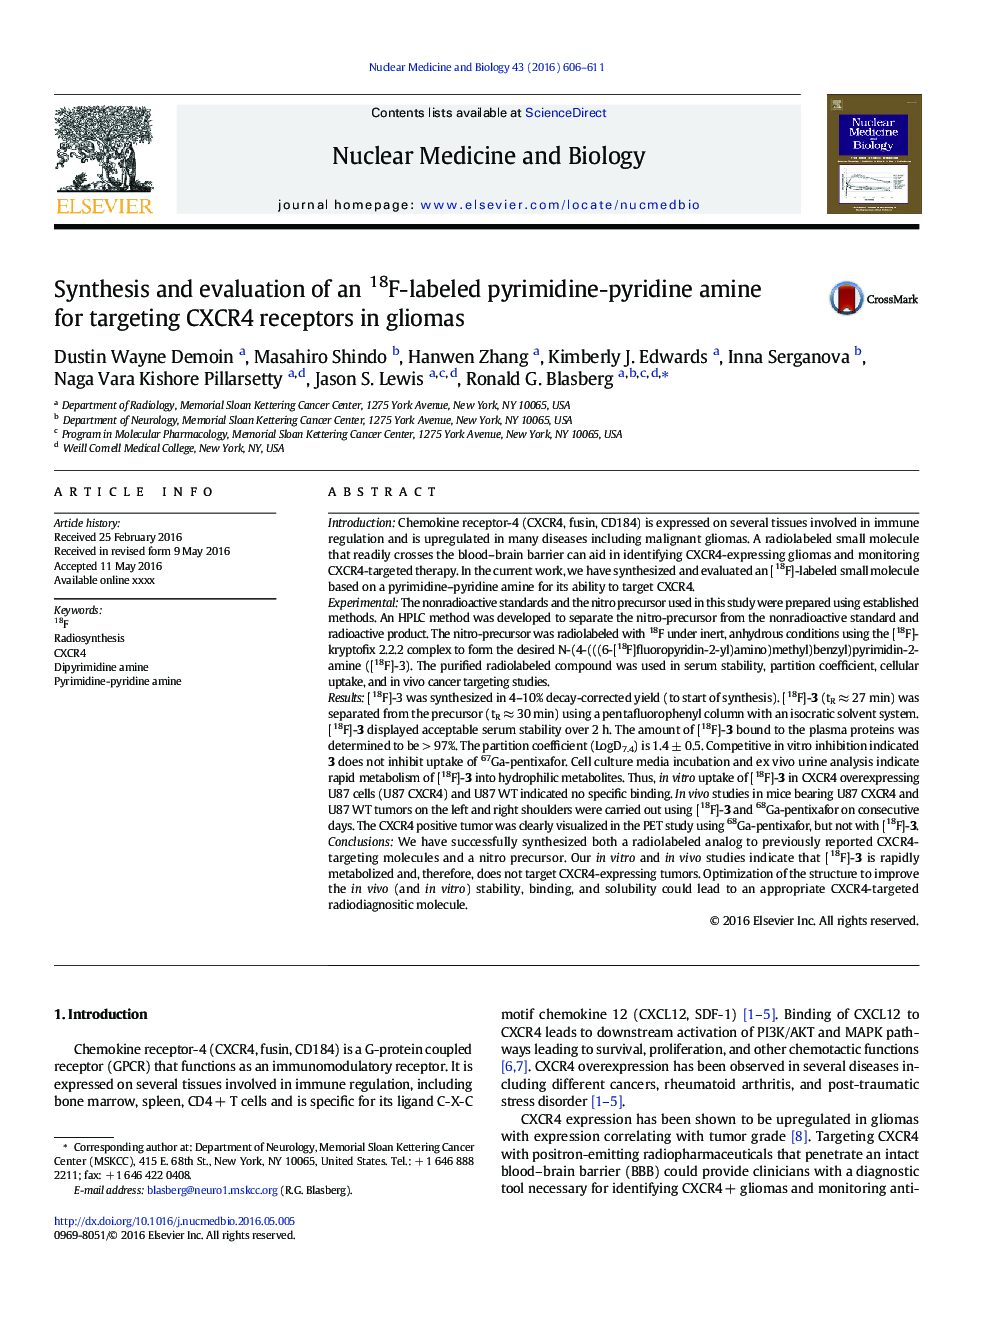 سنتز و ارزیابی یک آمین پوریمیدین ـ پیریدین با برچسب 18F برای هدف گیری گیرنده های CXCR4 در گلیوم